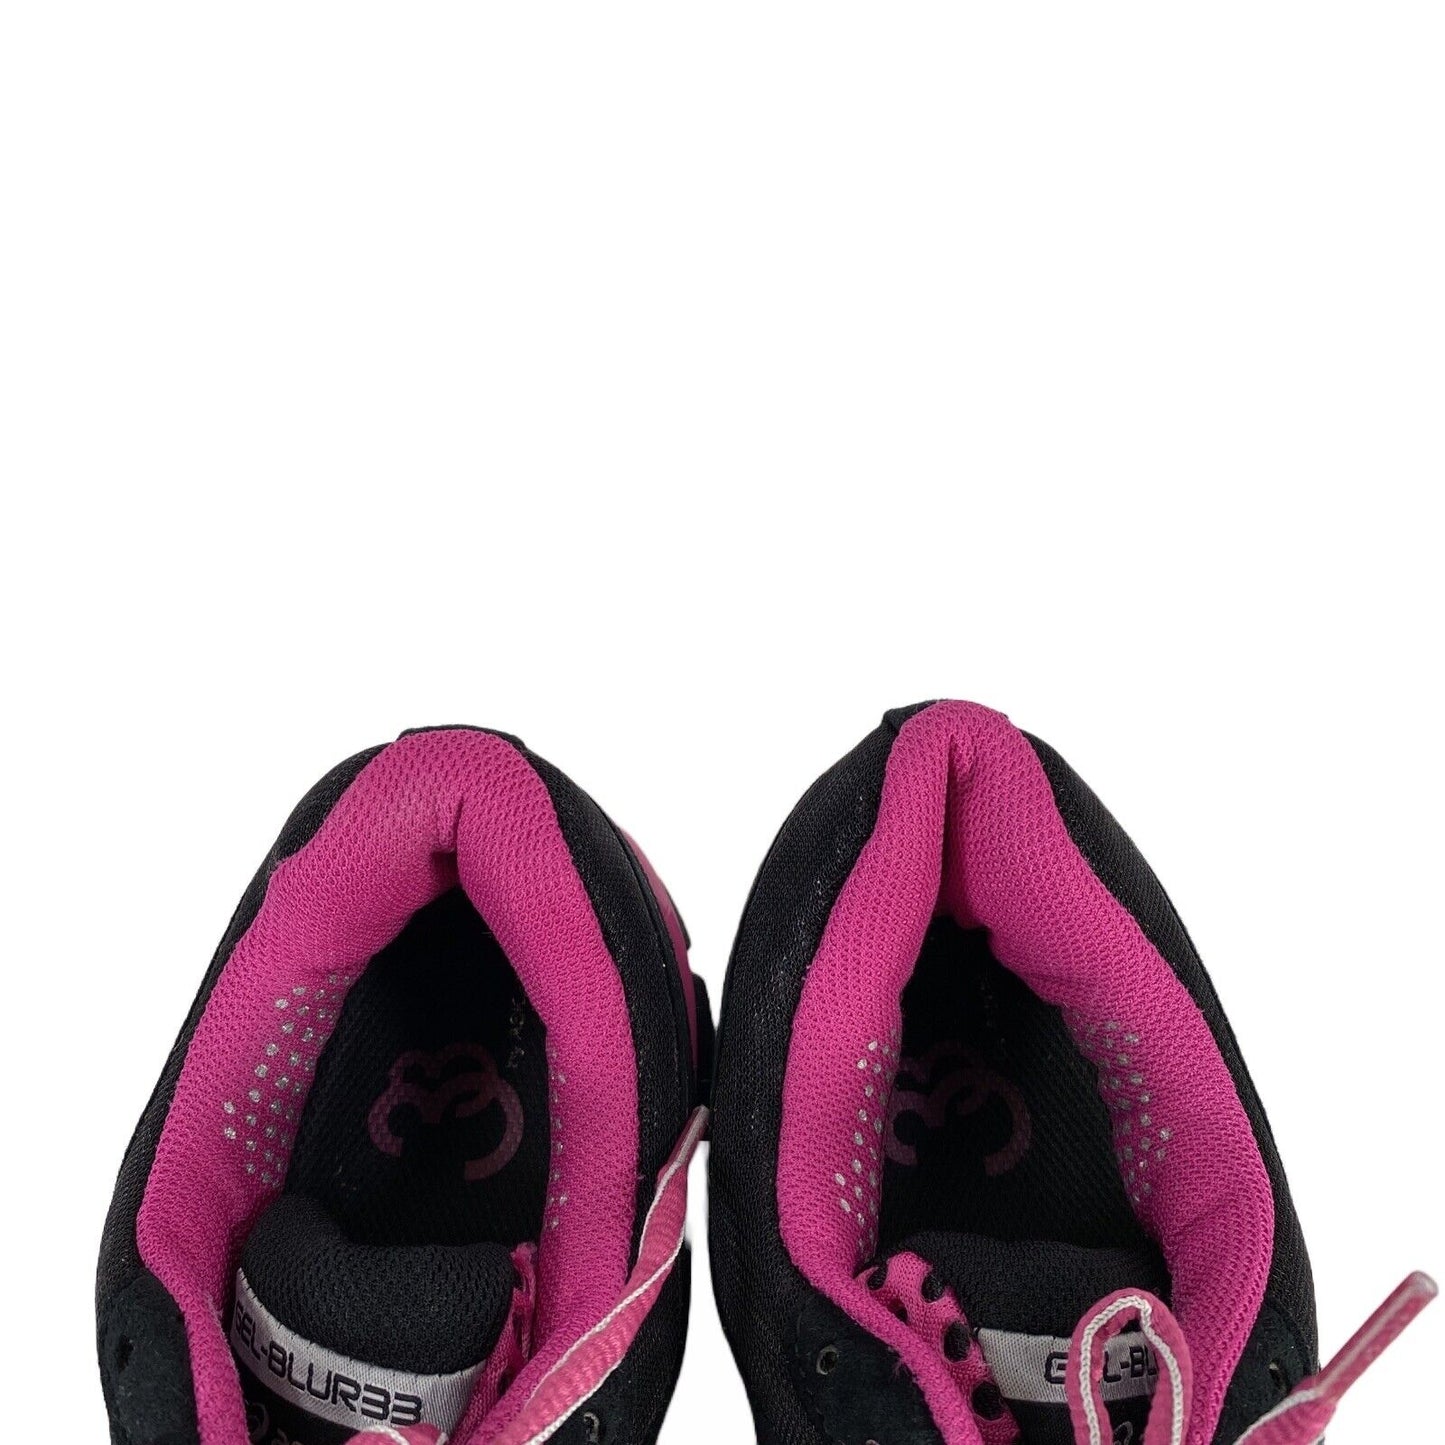 Asics Zapatillas deportivas para correr con cordones en negro/morado para mujer - 11